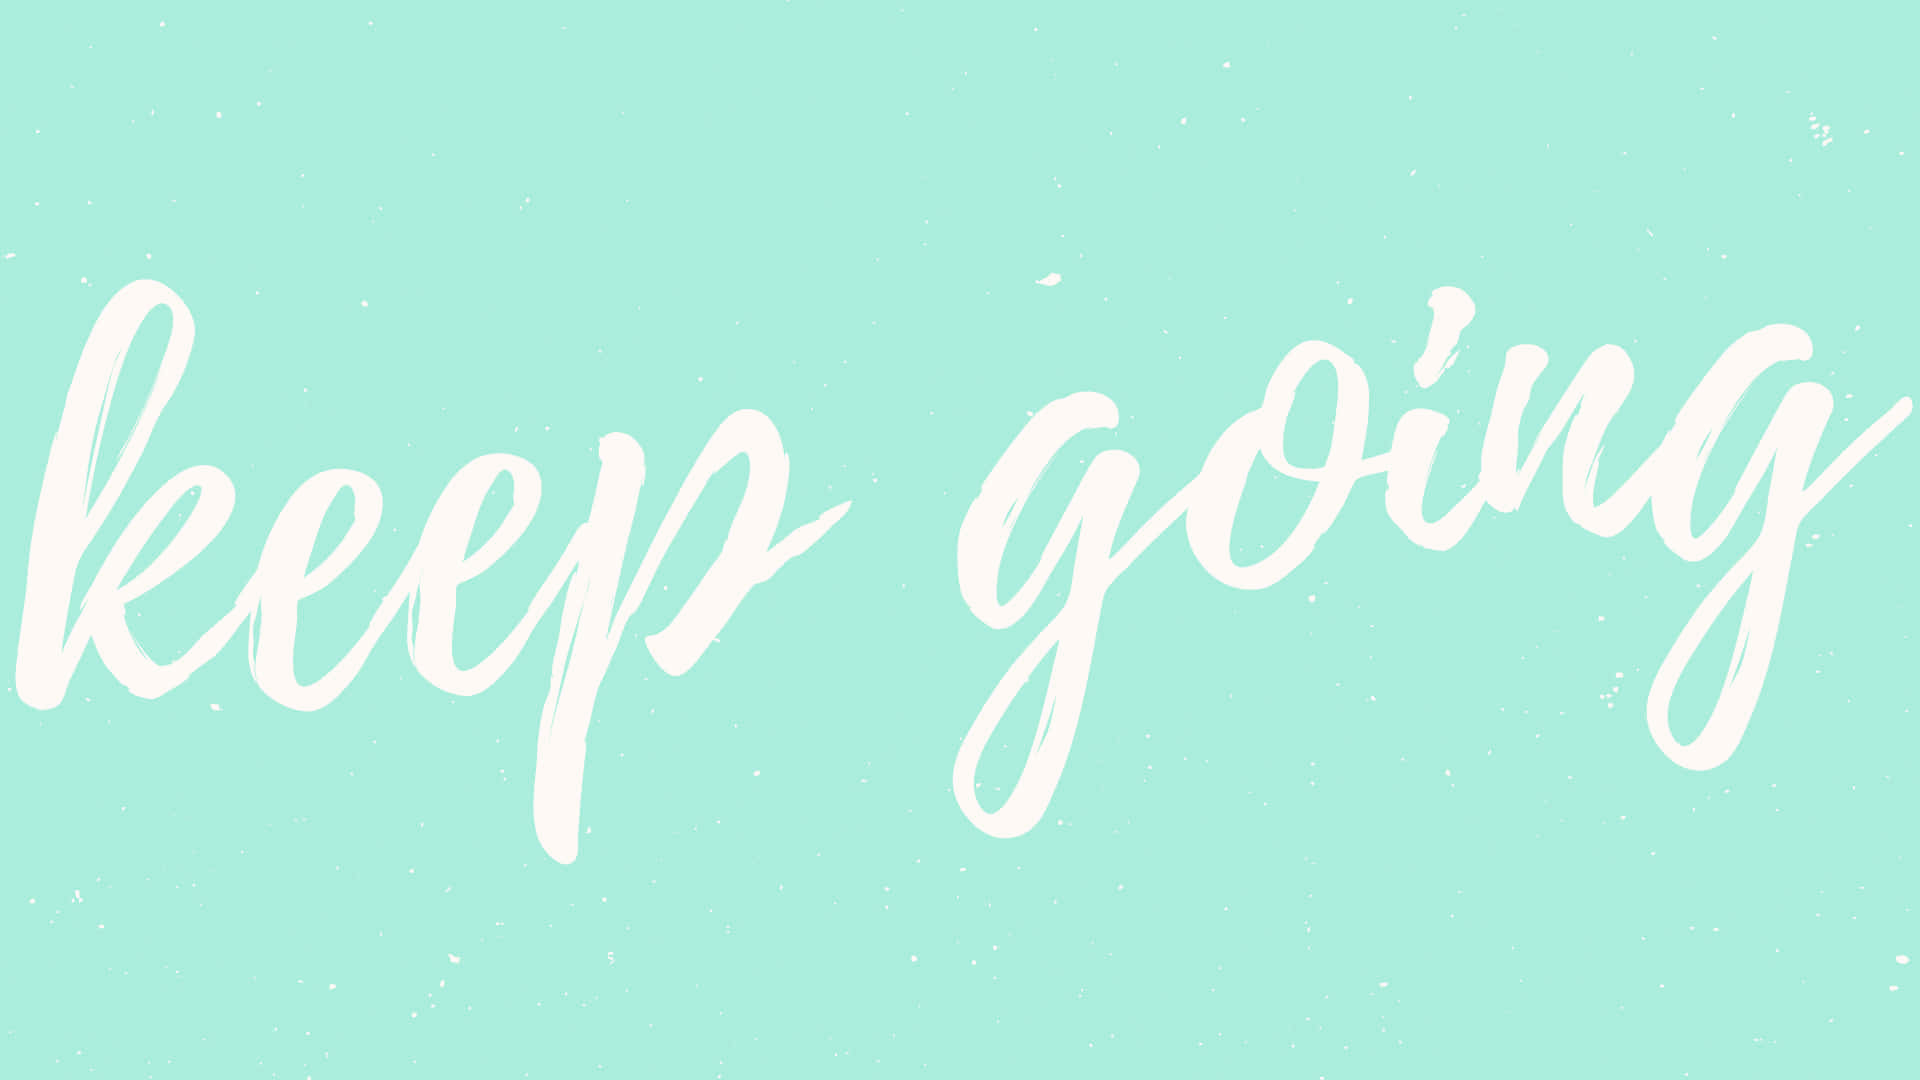 Motivational Wallpaper: Keep Going Wallpaper